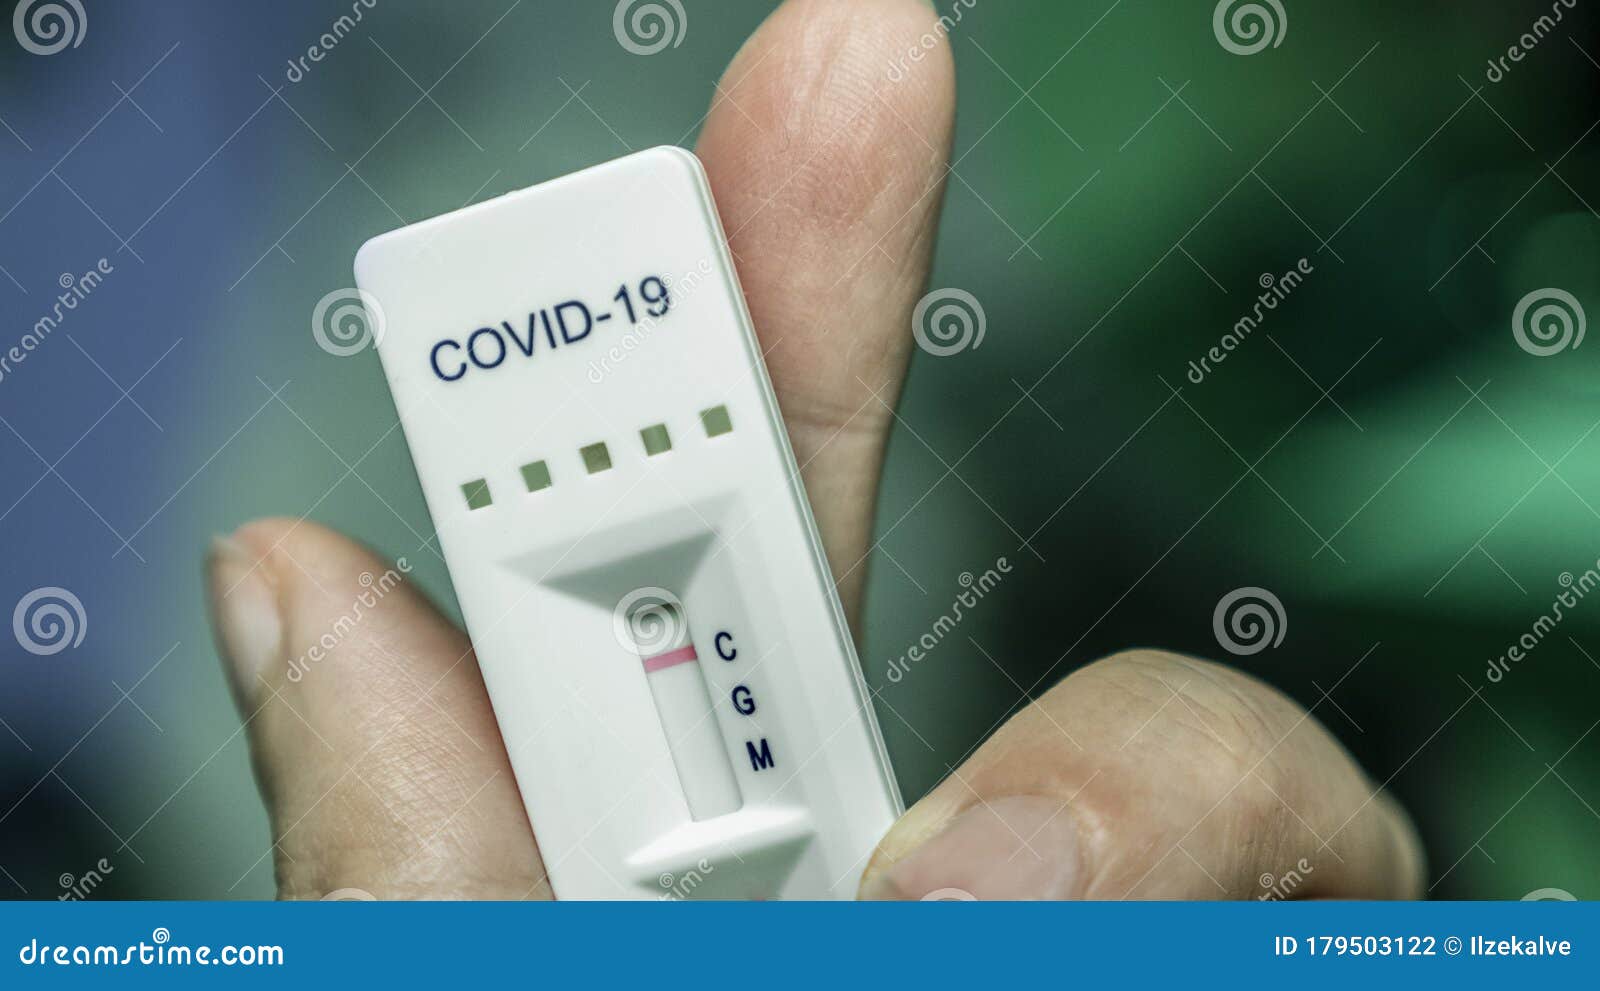 covid-19 rapid antibodies test kit